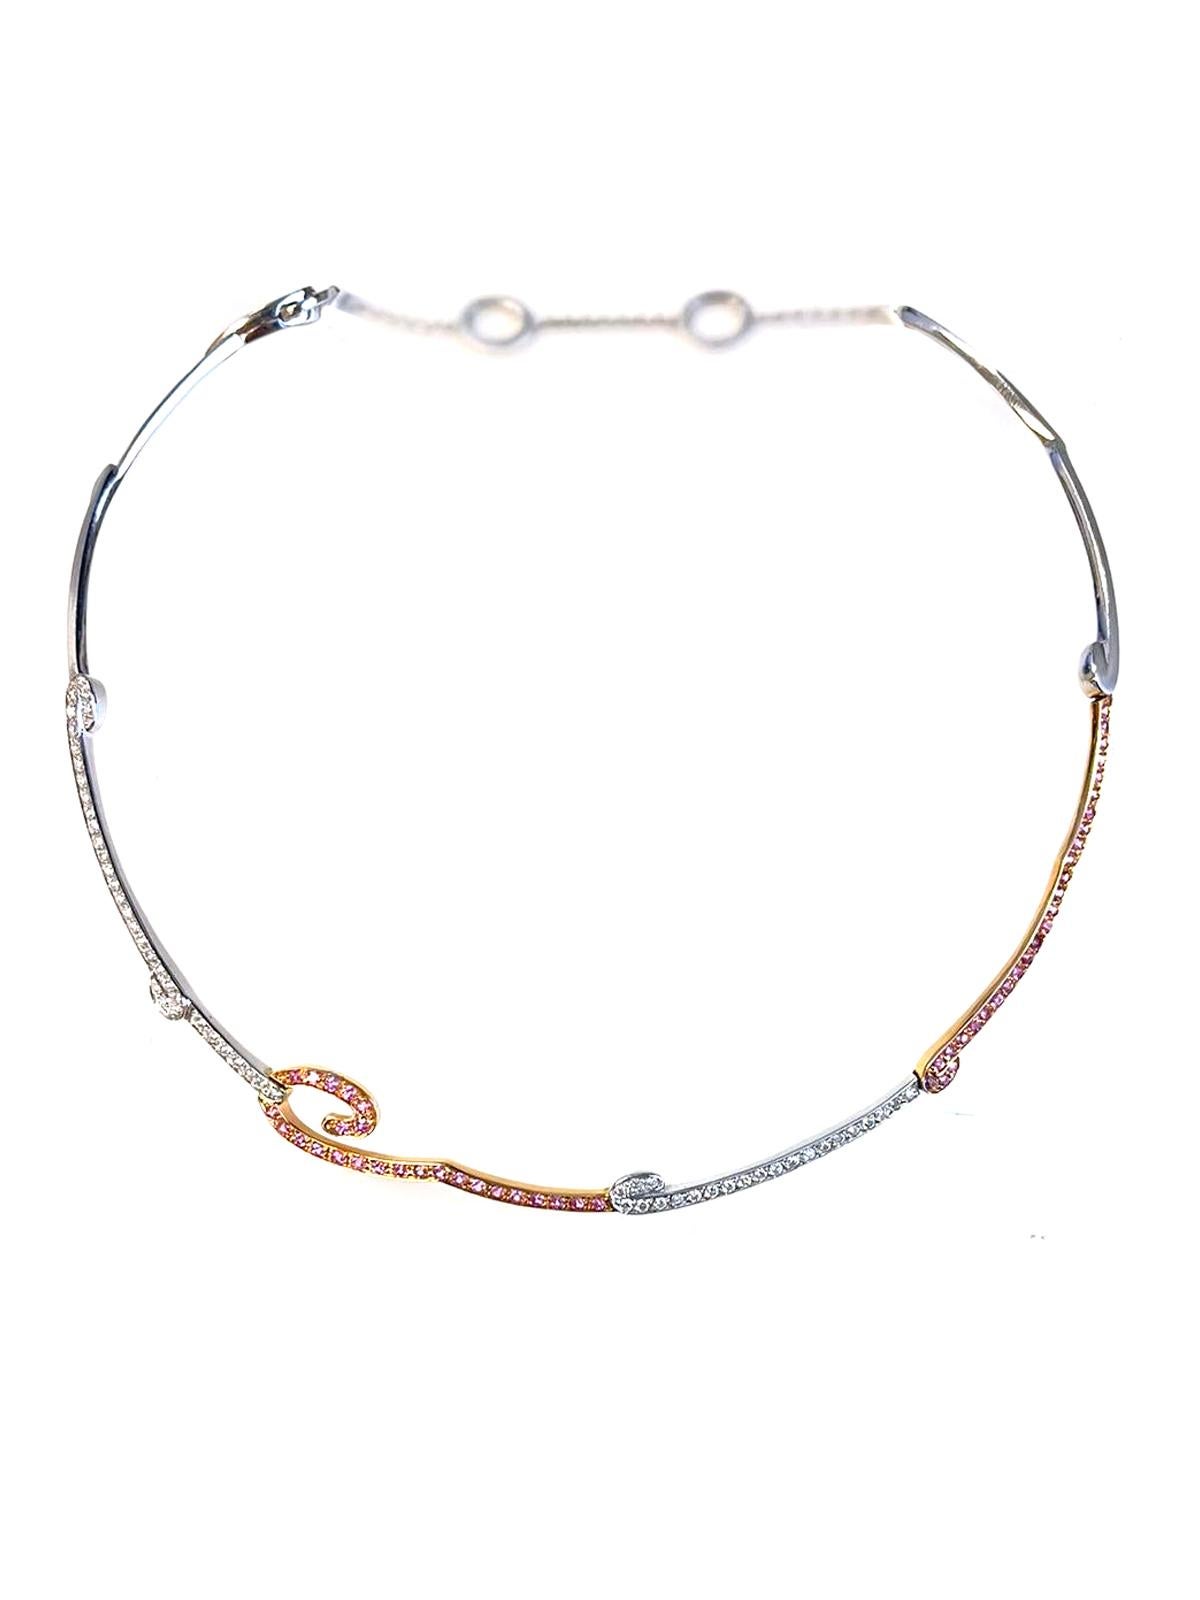 Diese 2,15-Karat-Halskette ist ein einzigartiges Stück im Italyn-Stil aus 18 Karat Roségold und Weißgold mit natürlichen runden Diamanten und rosa Saphiren. Diese ungewöhnliche Halskette wurde von Italyn Design entworfen, kreiert und liebevoll